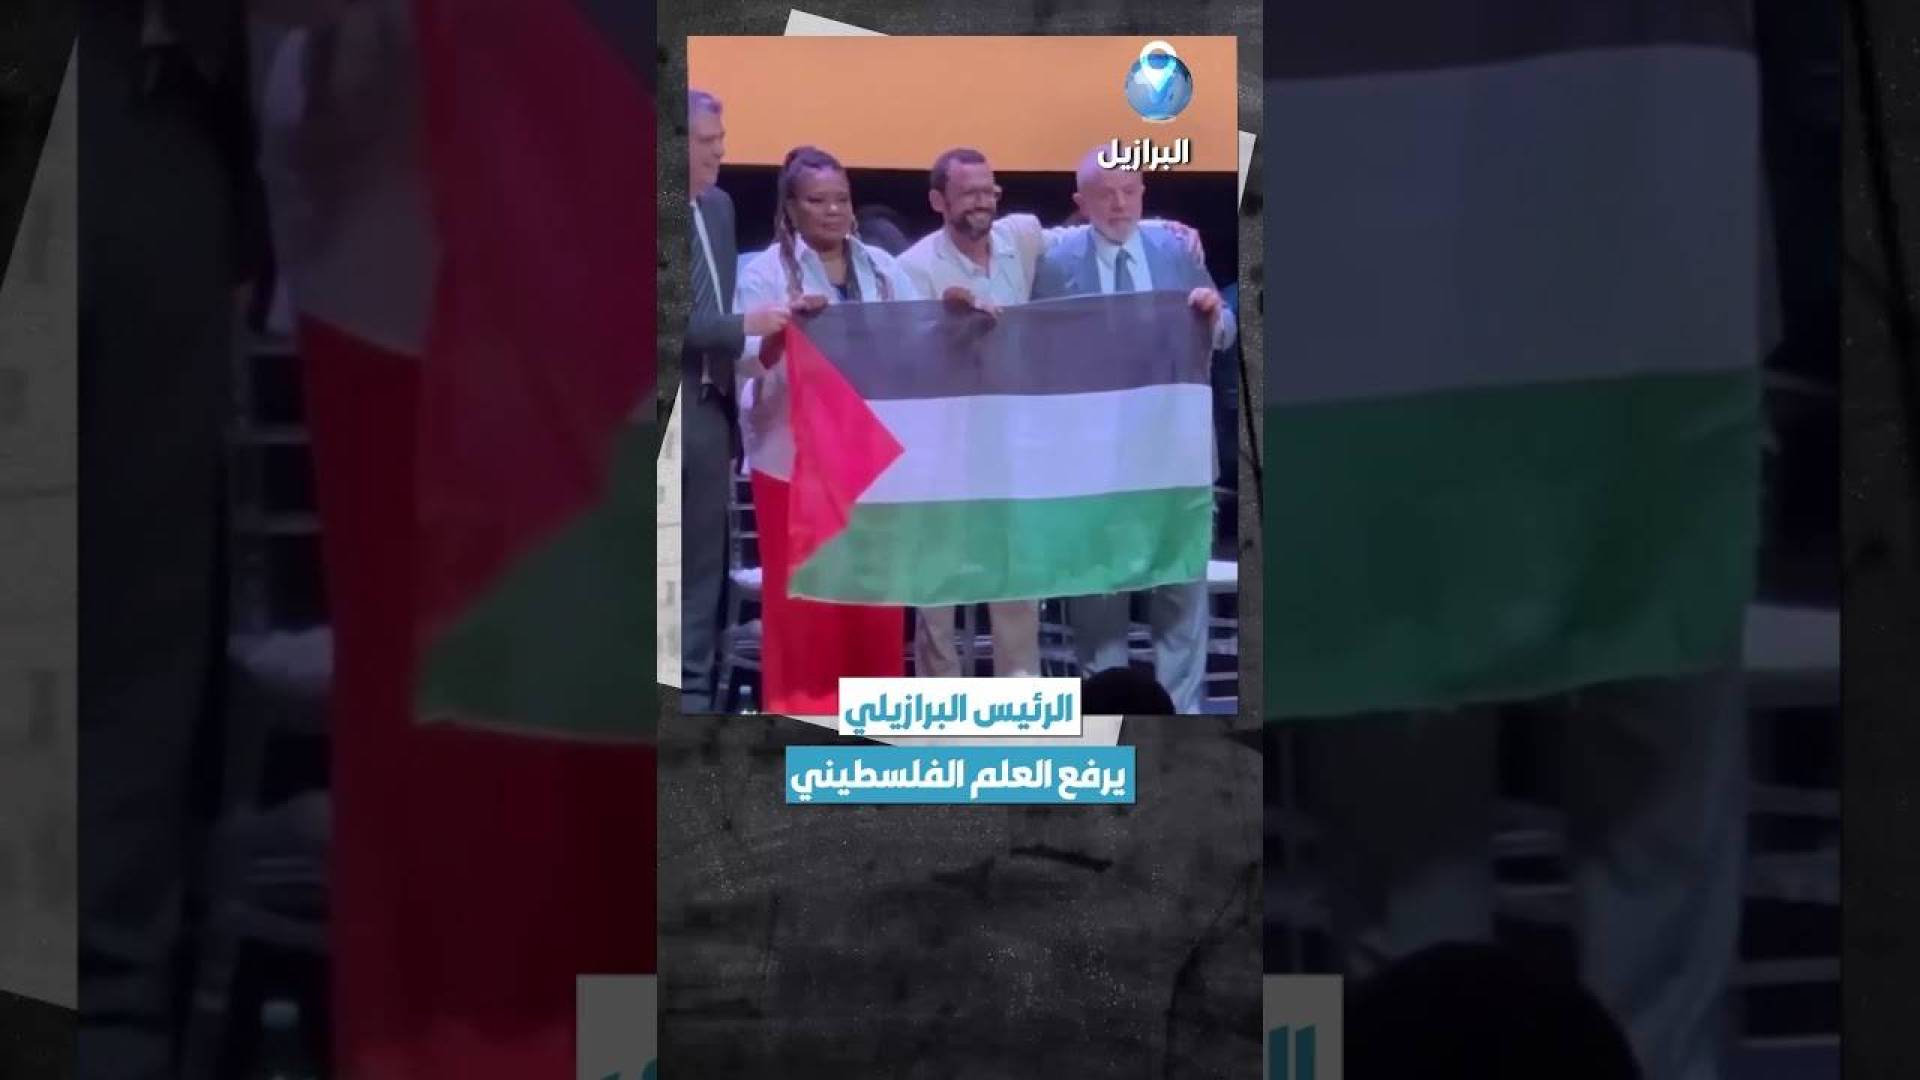 الرئيس البرازيلي يرفع العلم الفلسطيني